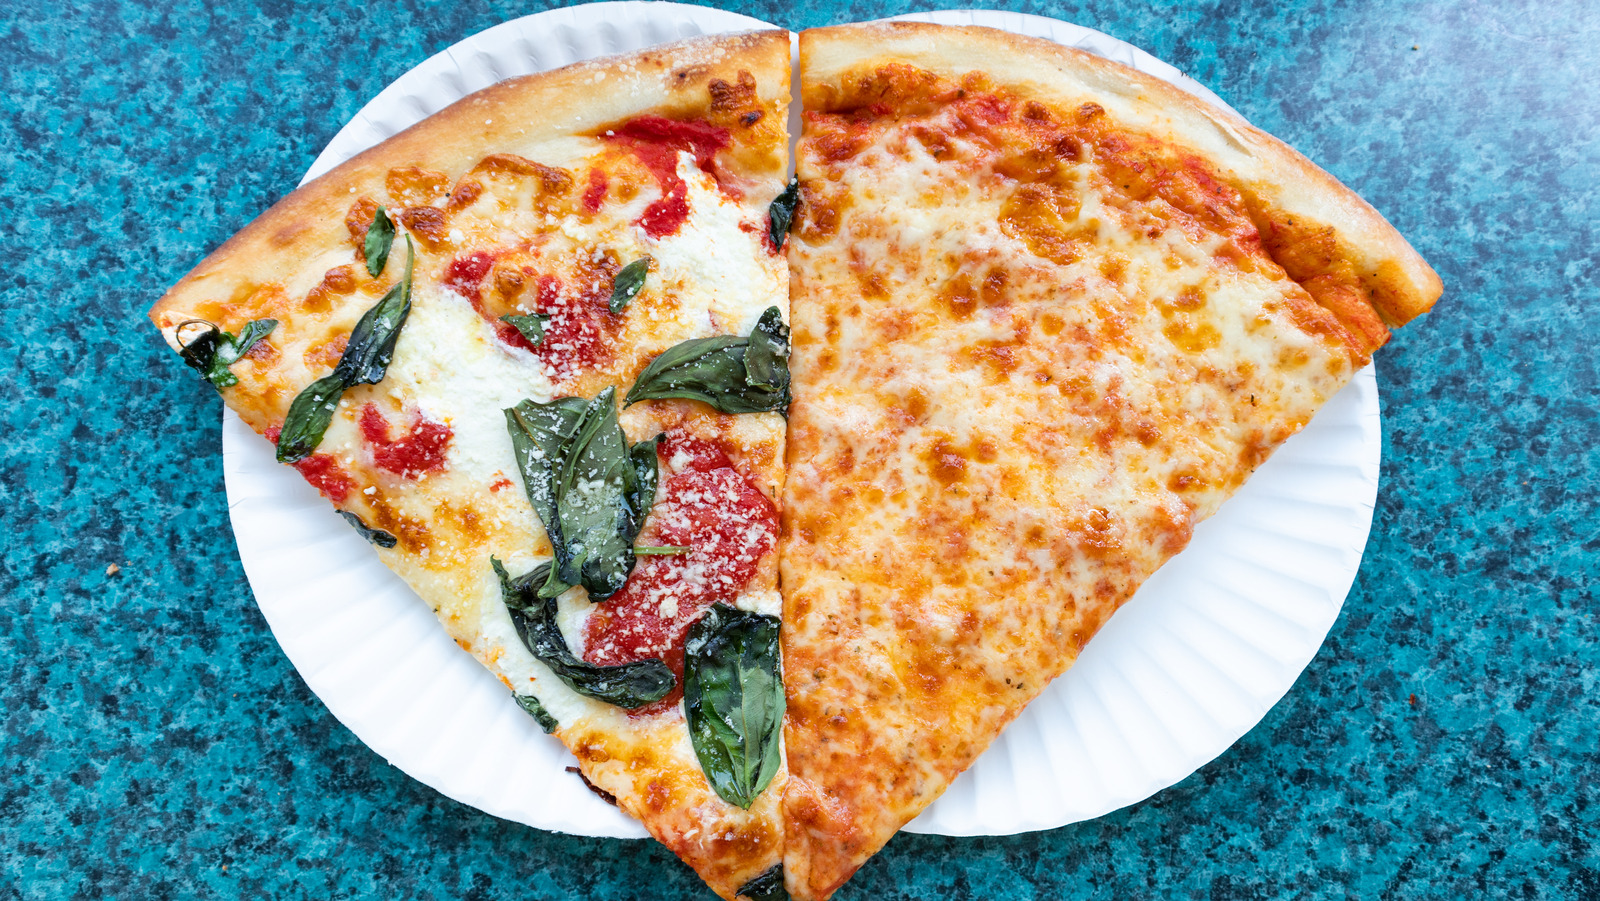 مياه الصنبور في نيويورك لا علاقة لها بجودة البيتزا